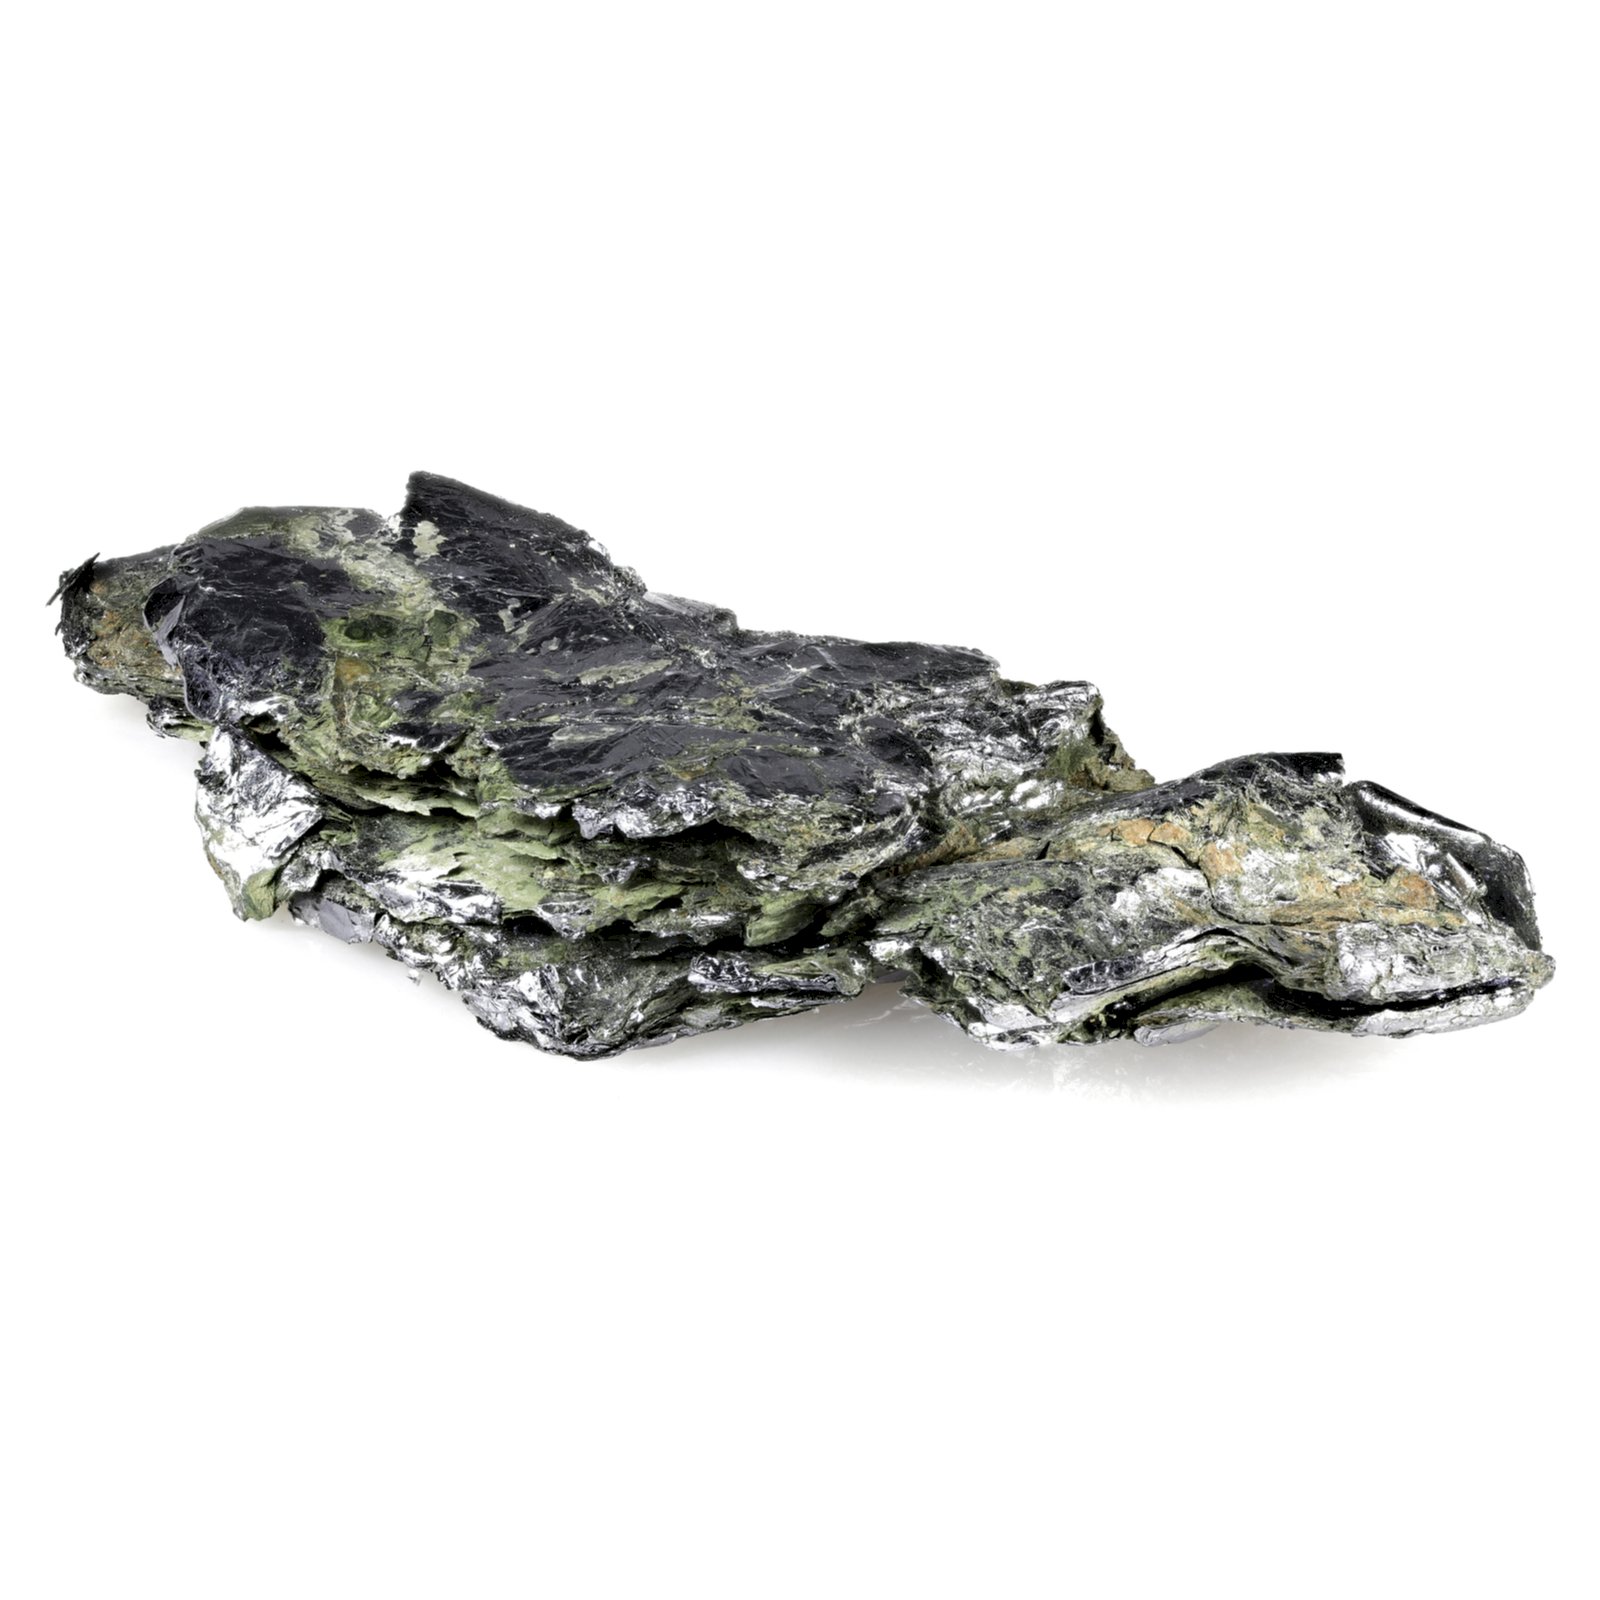 Molybdenit z Desmond Mine, Wilberforce, Ontario, Kanada – Bjoern Wylezich / Shutterstock